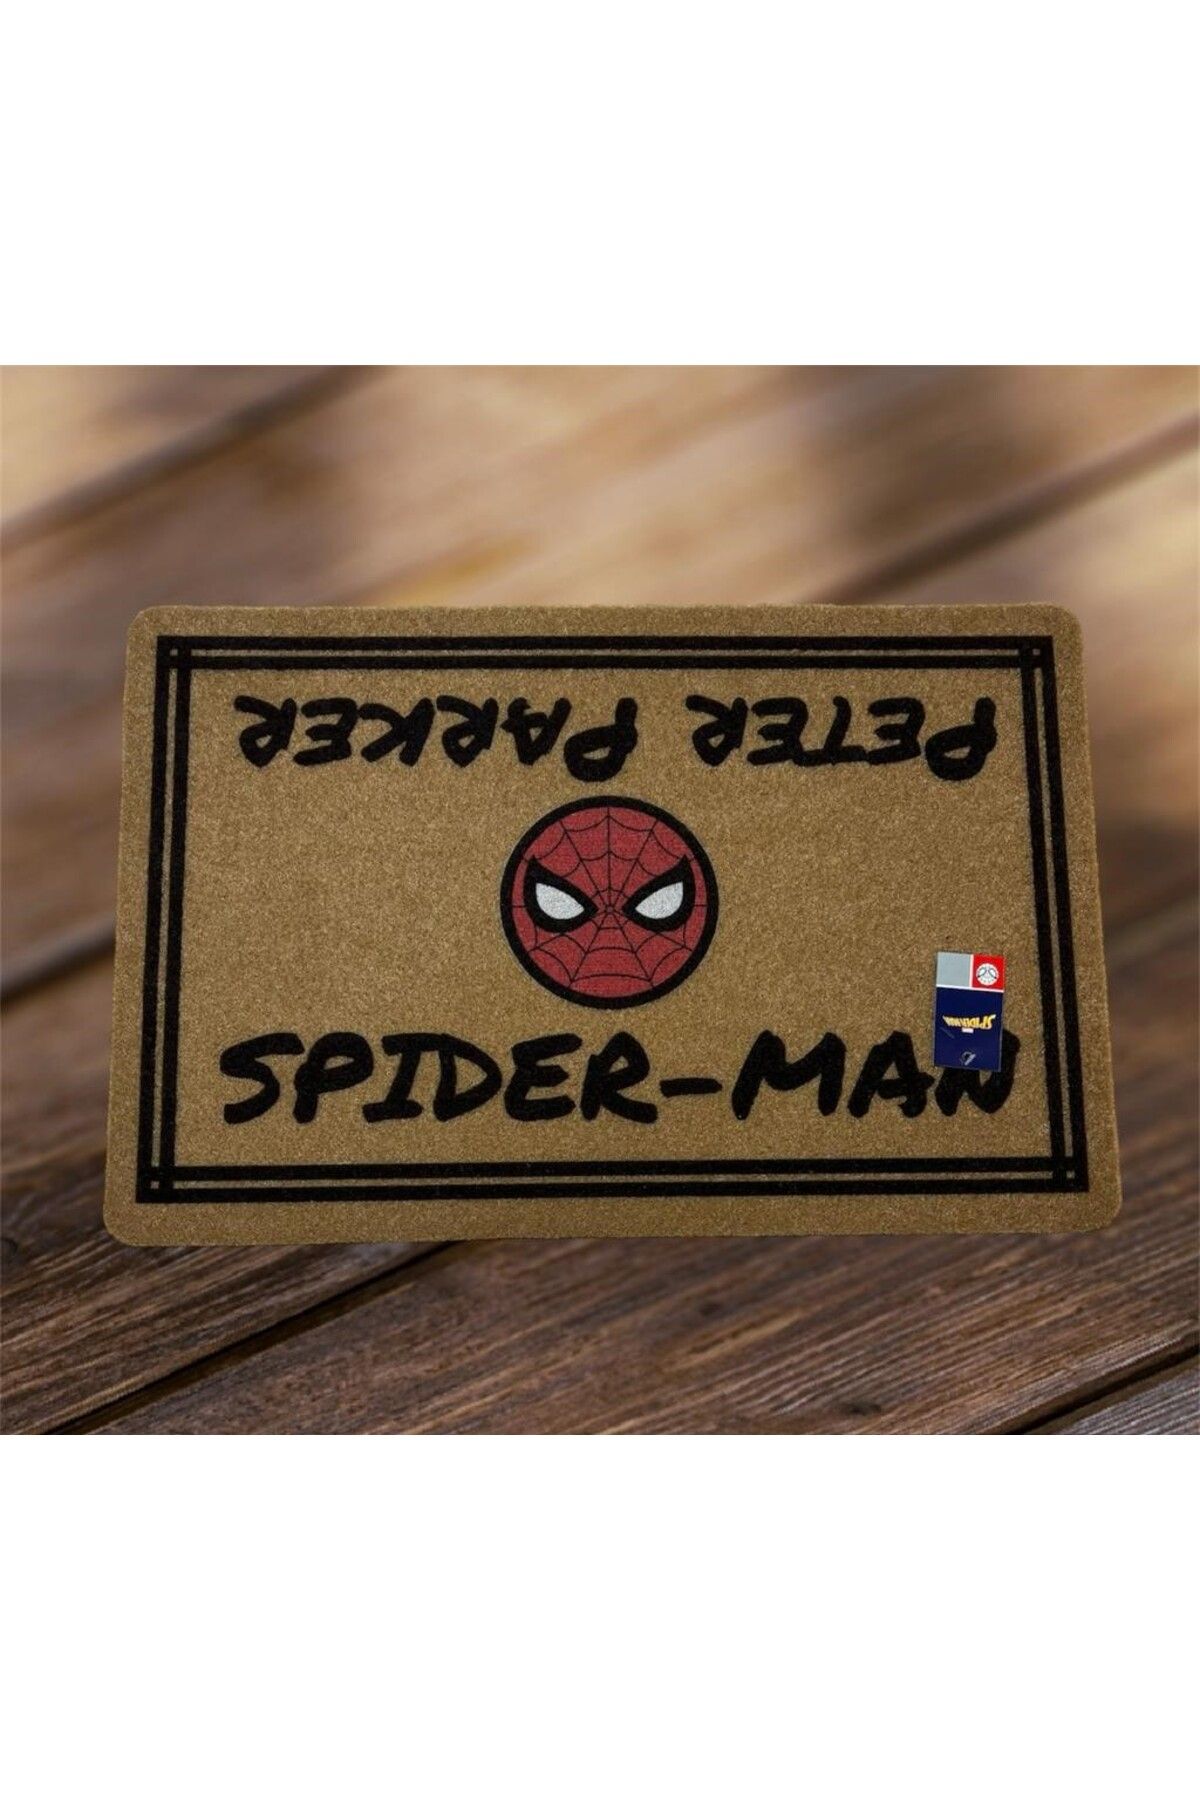 Taç Disney  Spiderman Dikdörtgen  Kapı Önü Kaymaz Taban  Paspas 40x60 cm